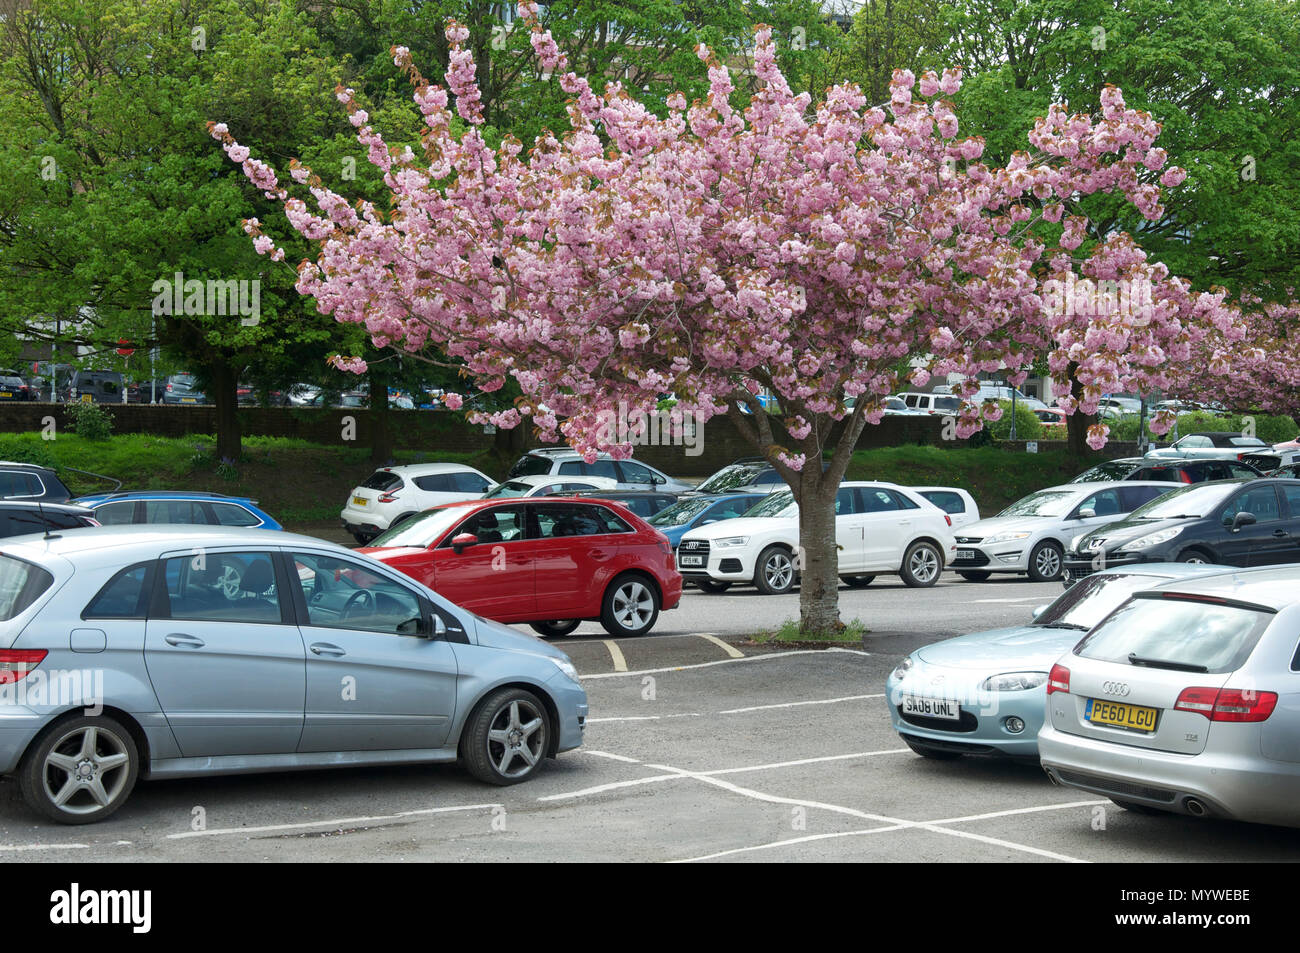 Ciliegio ornamentale Blossom Tree di bloom, crescendo in un ambiente urbano parcheggio auto. Questi decorativi alberi di ombra sono tolleranti di inquinamento atmosferico. Inghilterra, Regno Unito Foto Stock